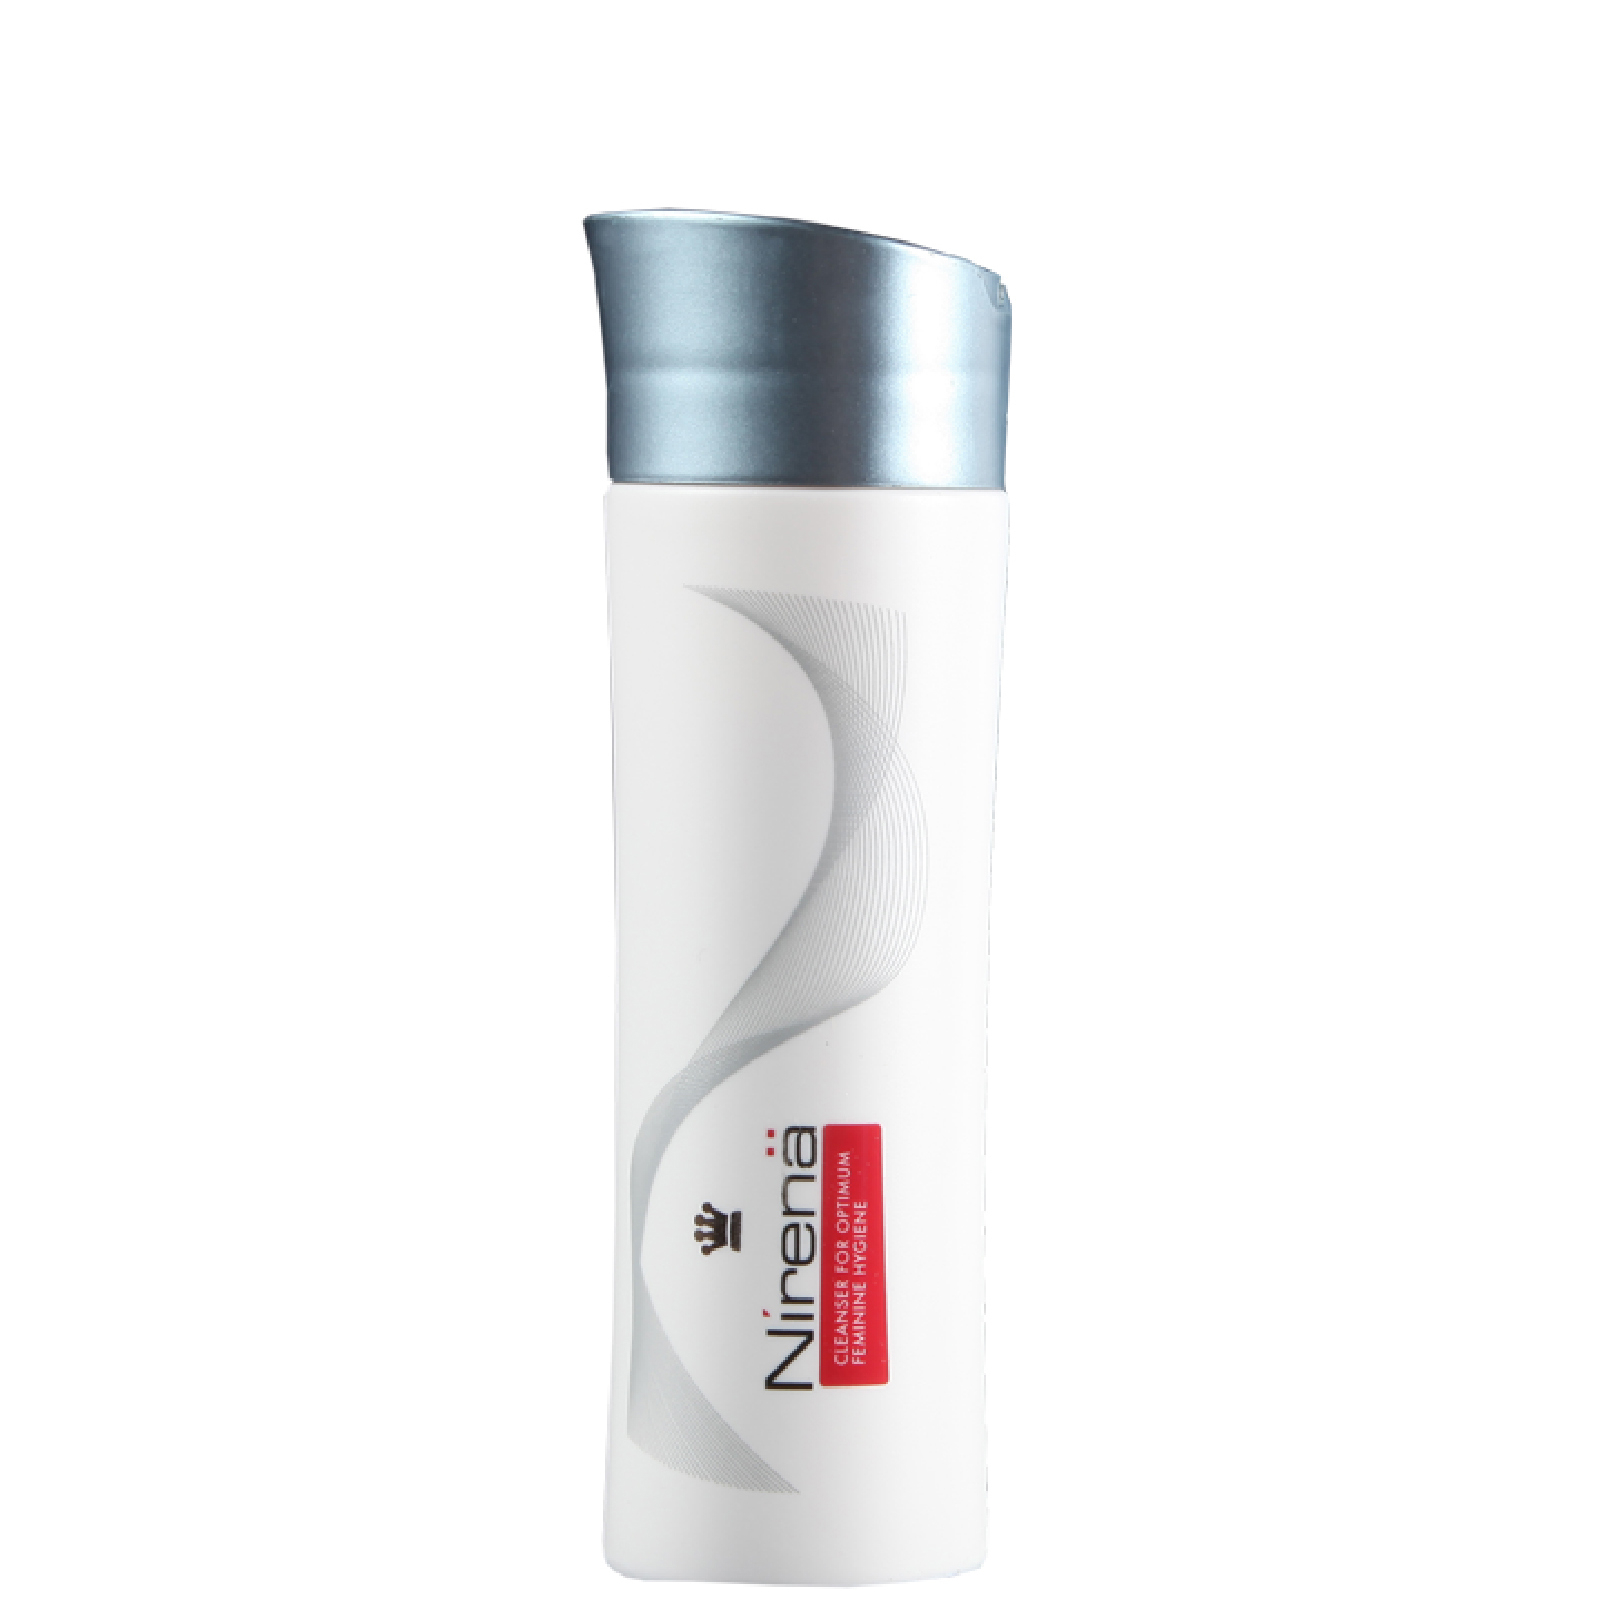 Nirena Premium Feminine Cleanser de DS Laboratories (120 ml)